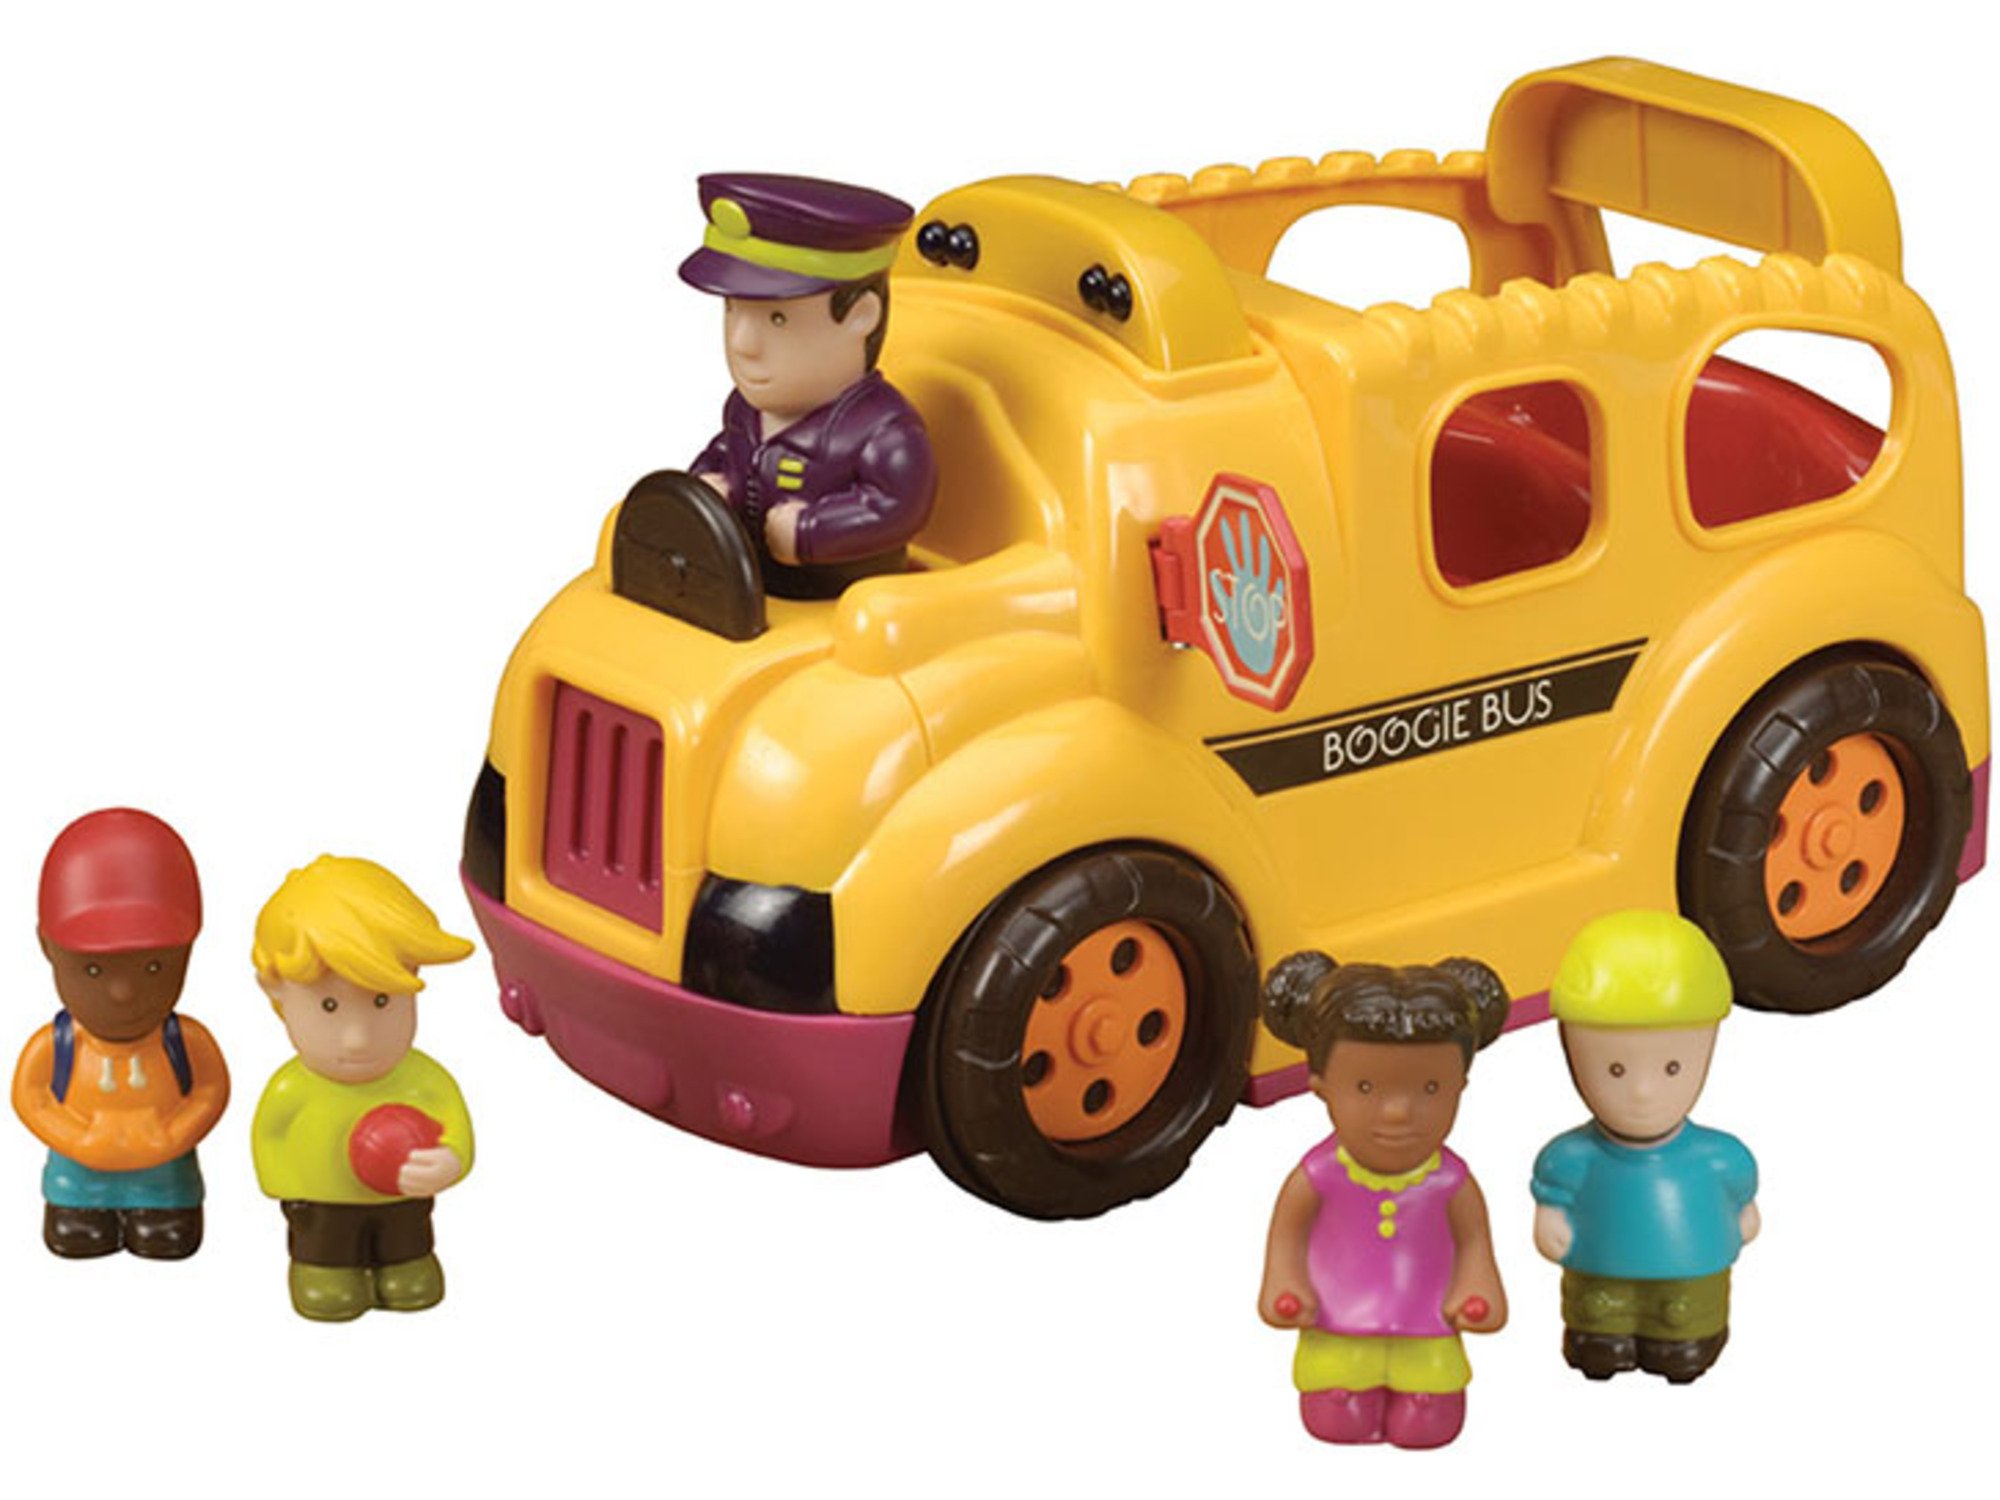 B toys igračka autobus 312009